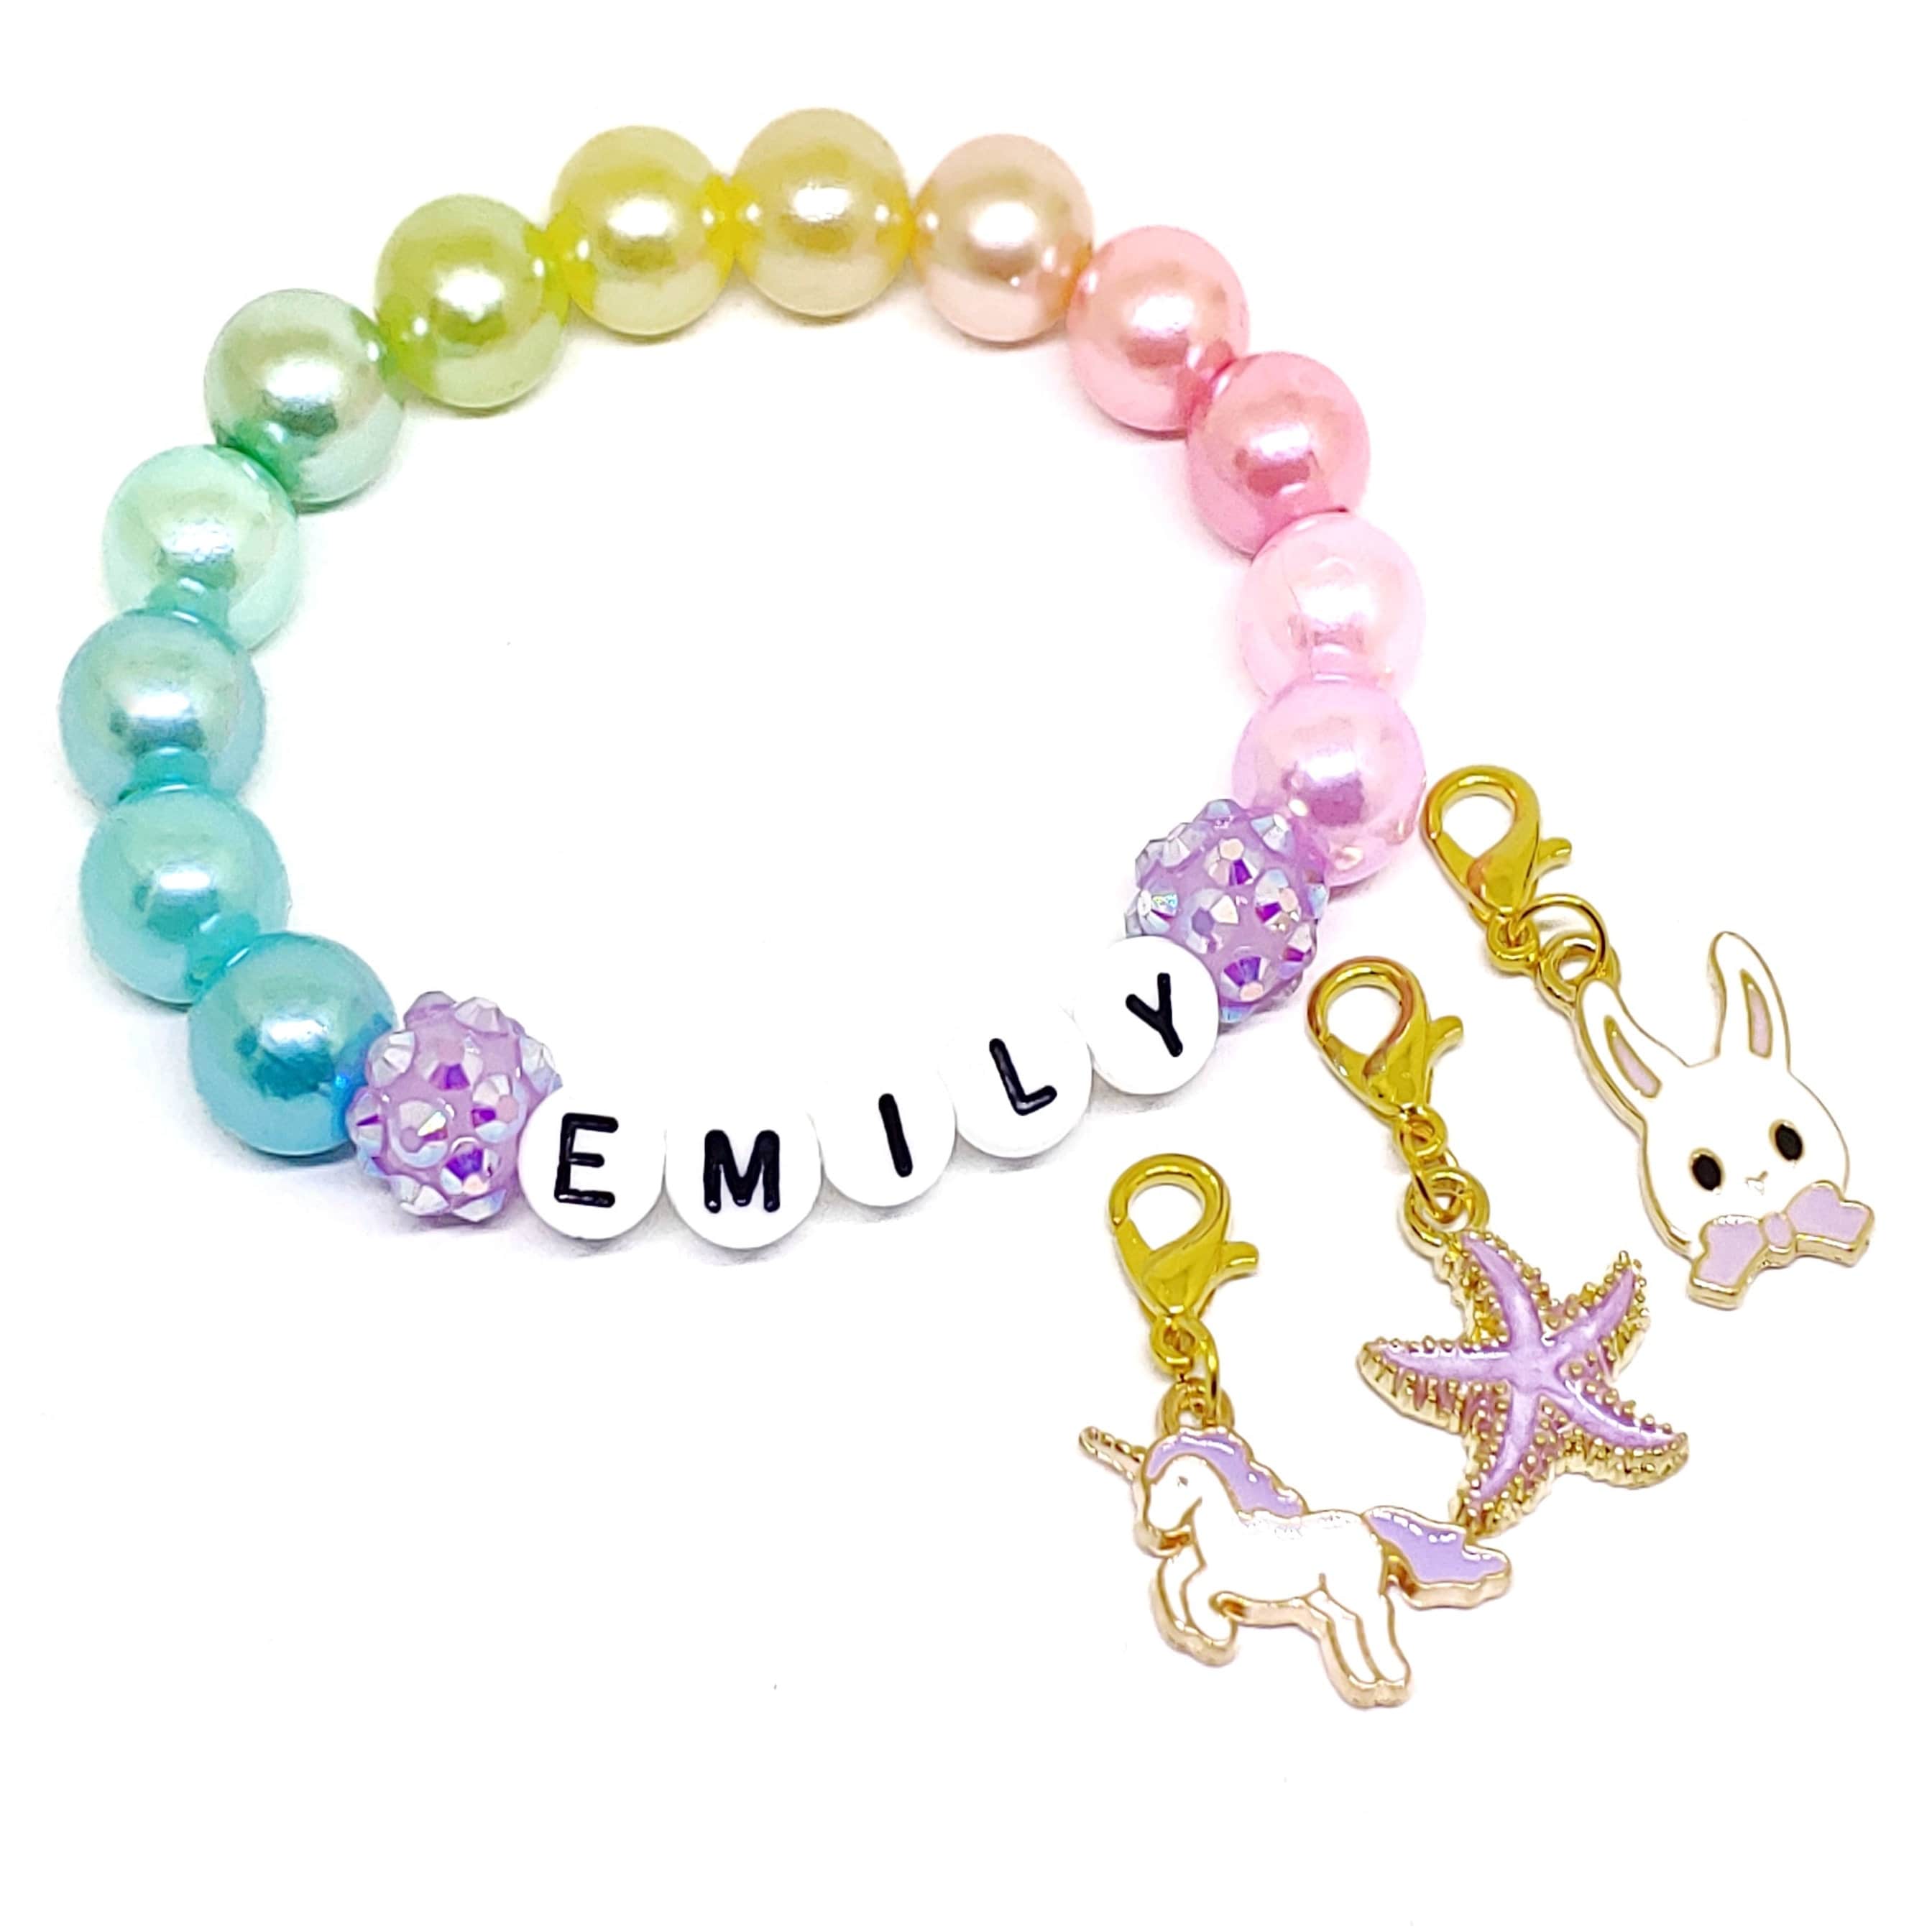 Just My Style Unicorn Friendship Bracelets